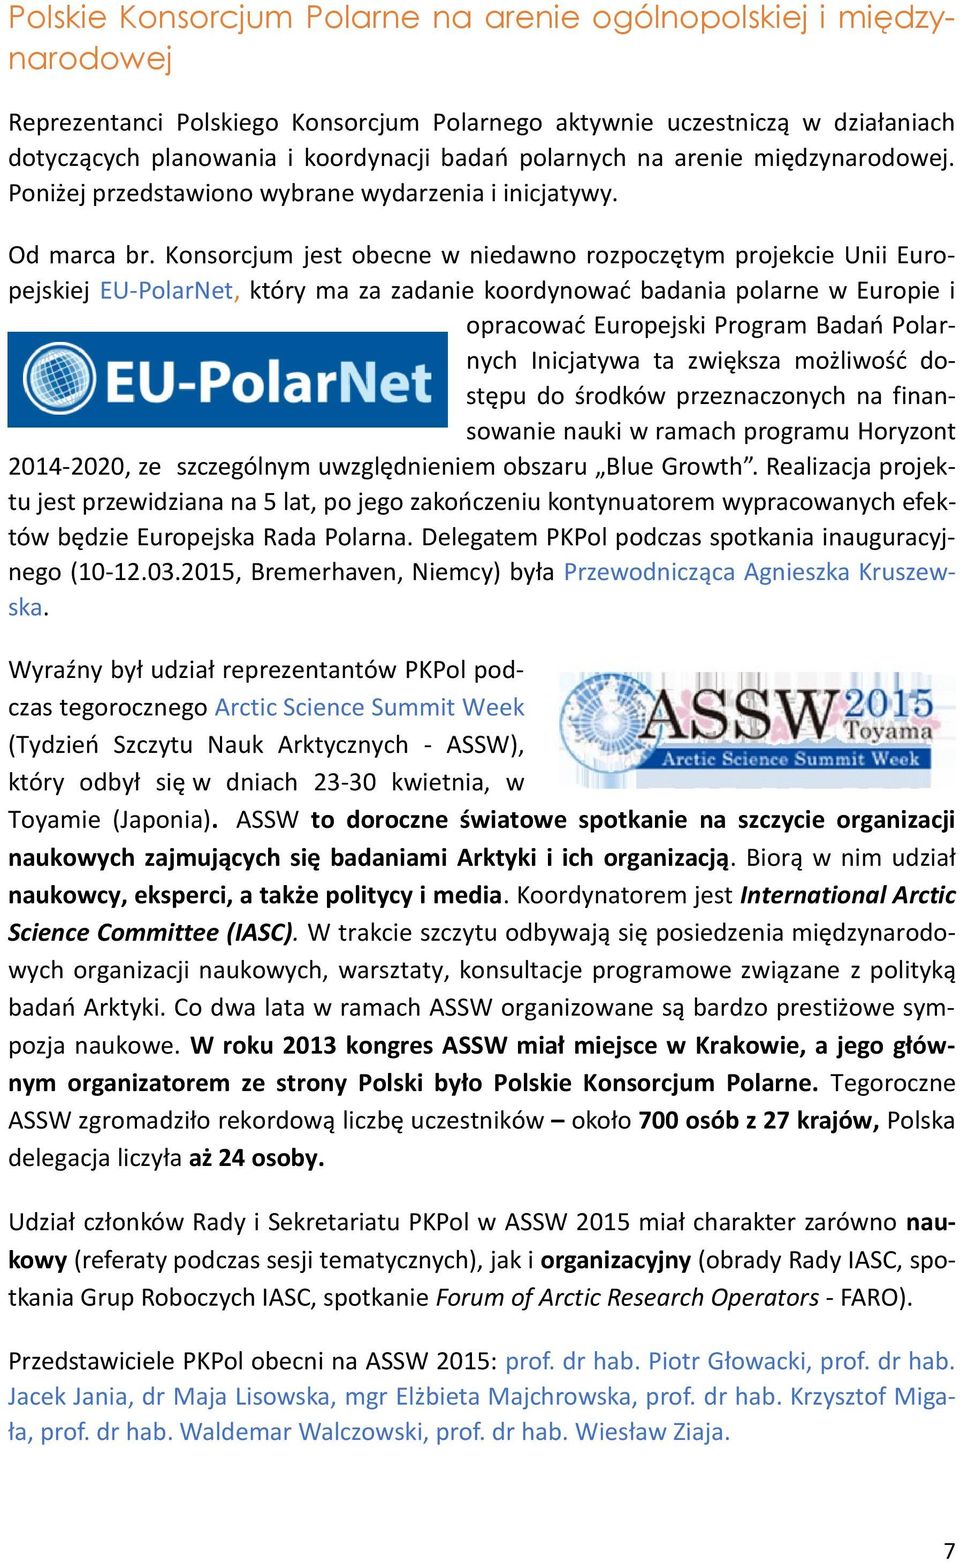 Konsorcjum jest obecne w niedawno rozpoczętym projekcie Unii Europejskiej EU-PolarNet, który ma za zadanie koordynować badania polarne w Europie i opracować Europejski Program Badań Polarnych